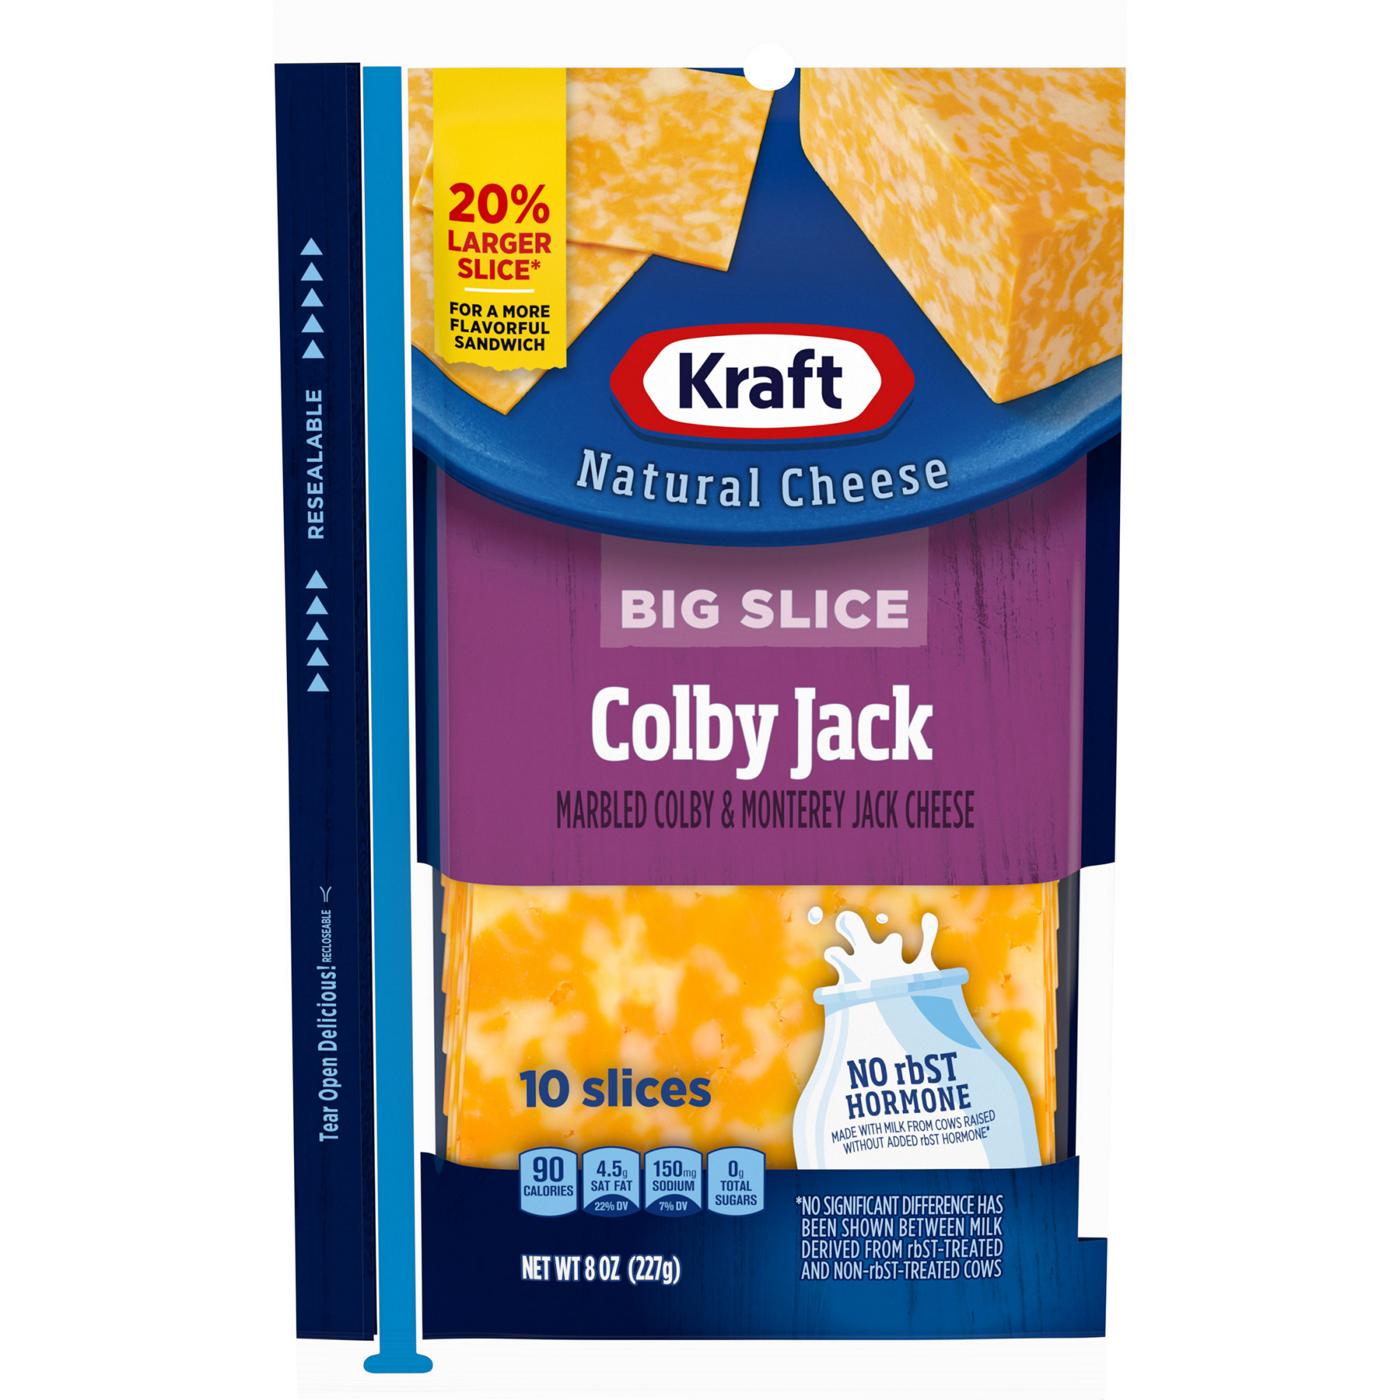 Kraft Big Slice Colby Jack Sliced Cheese; image 1 of 2